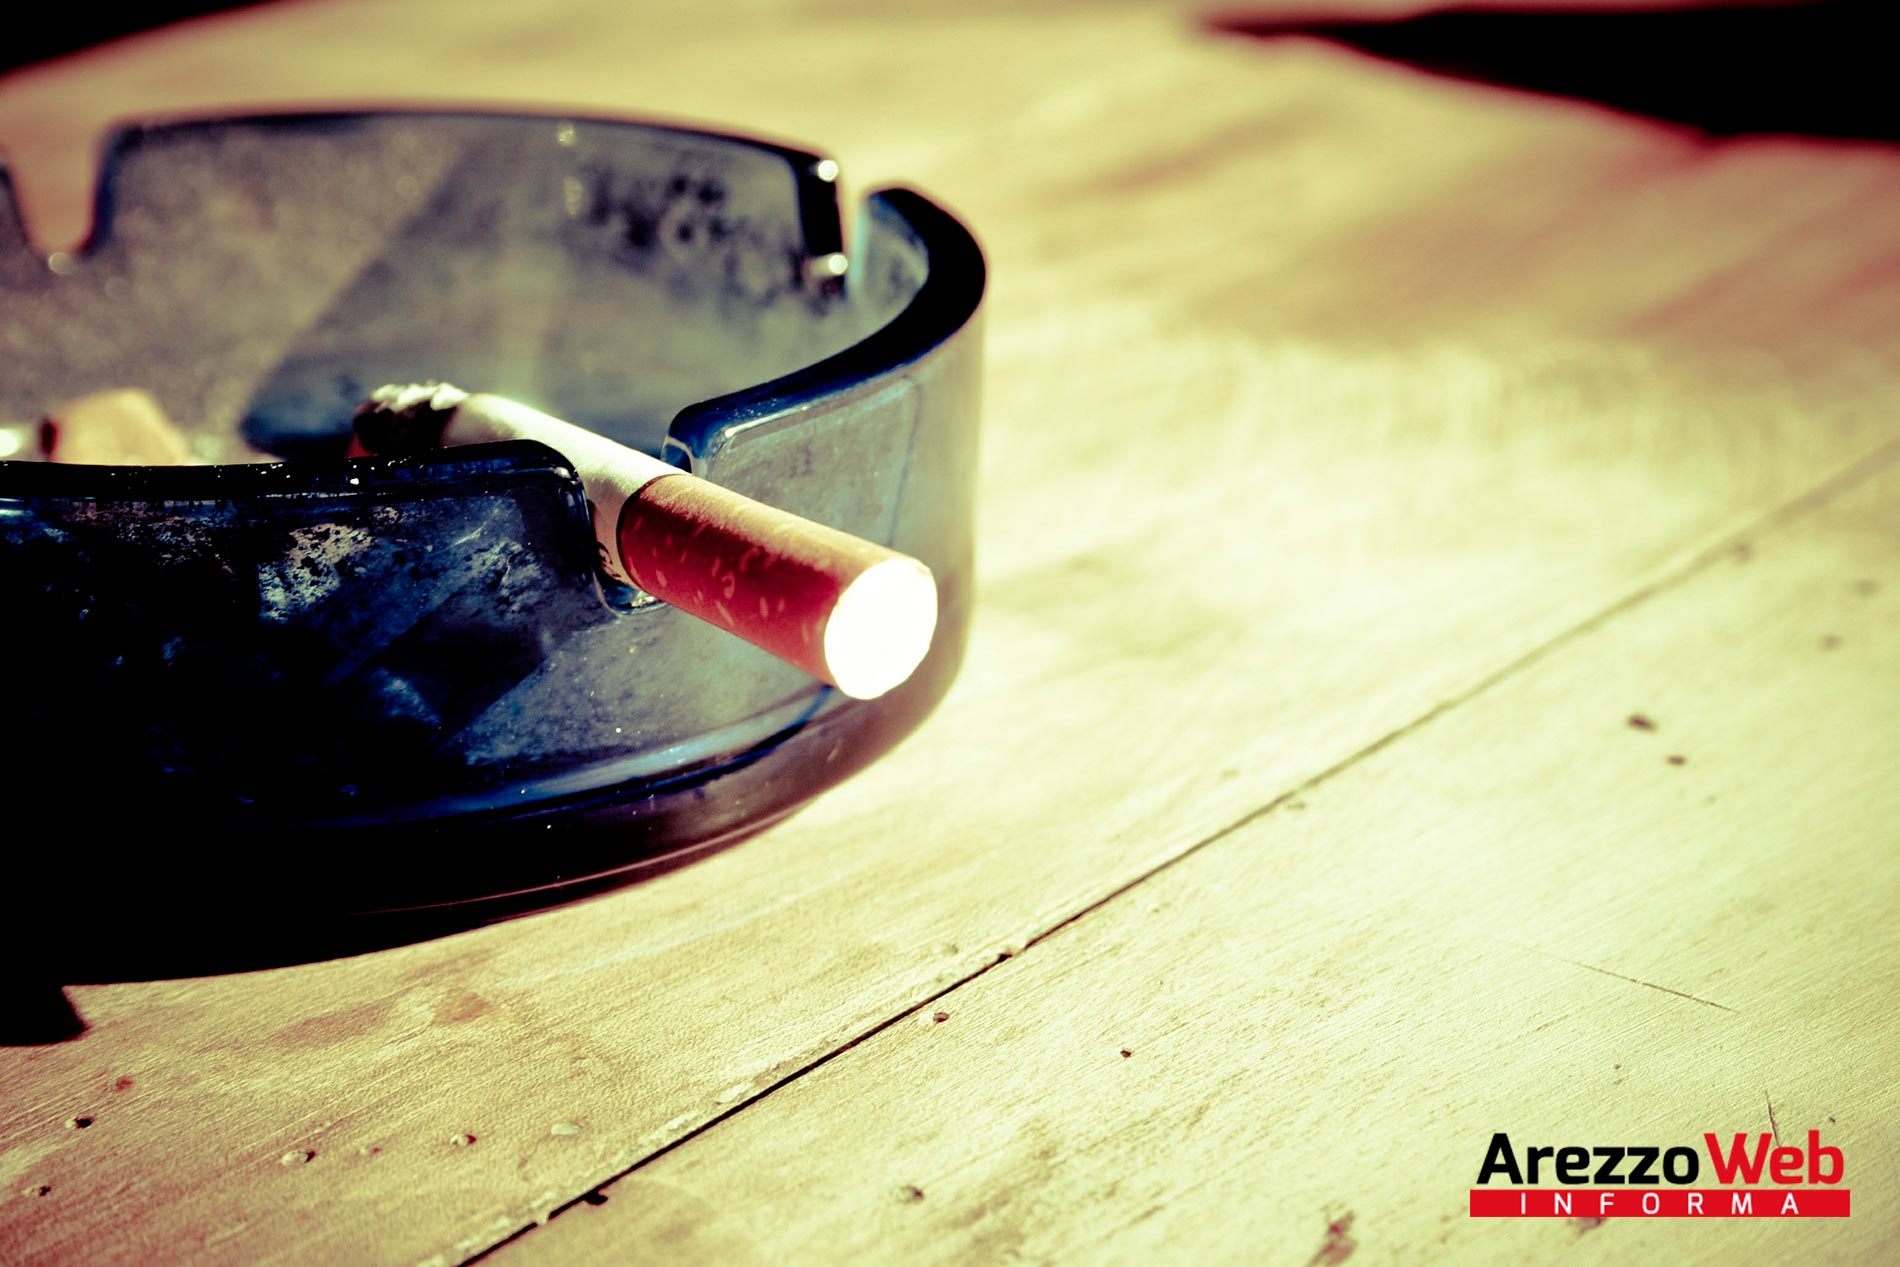 “Fumatori più vulnerabili al Covid e rischio che il virus sia più severo”